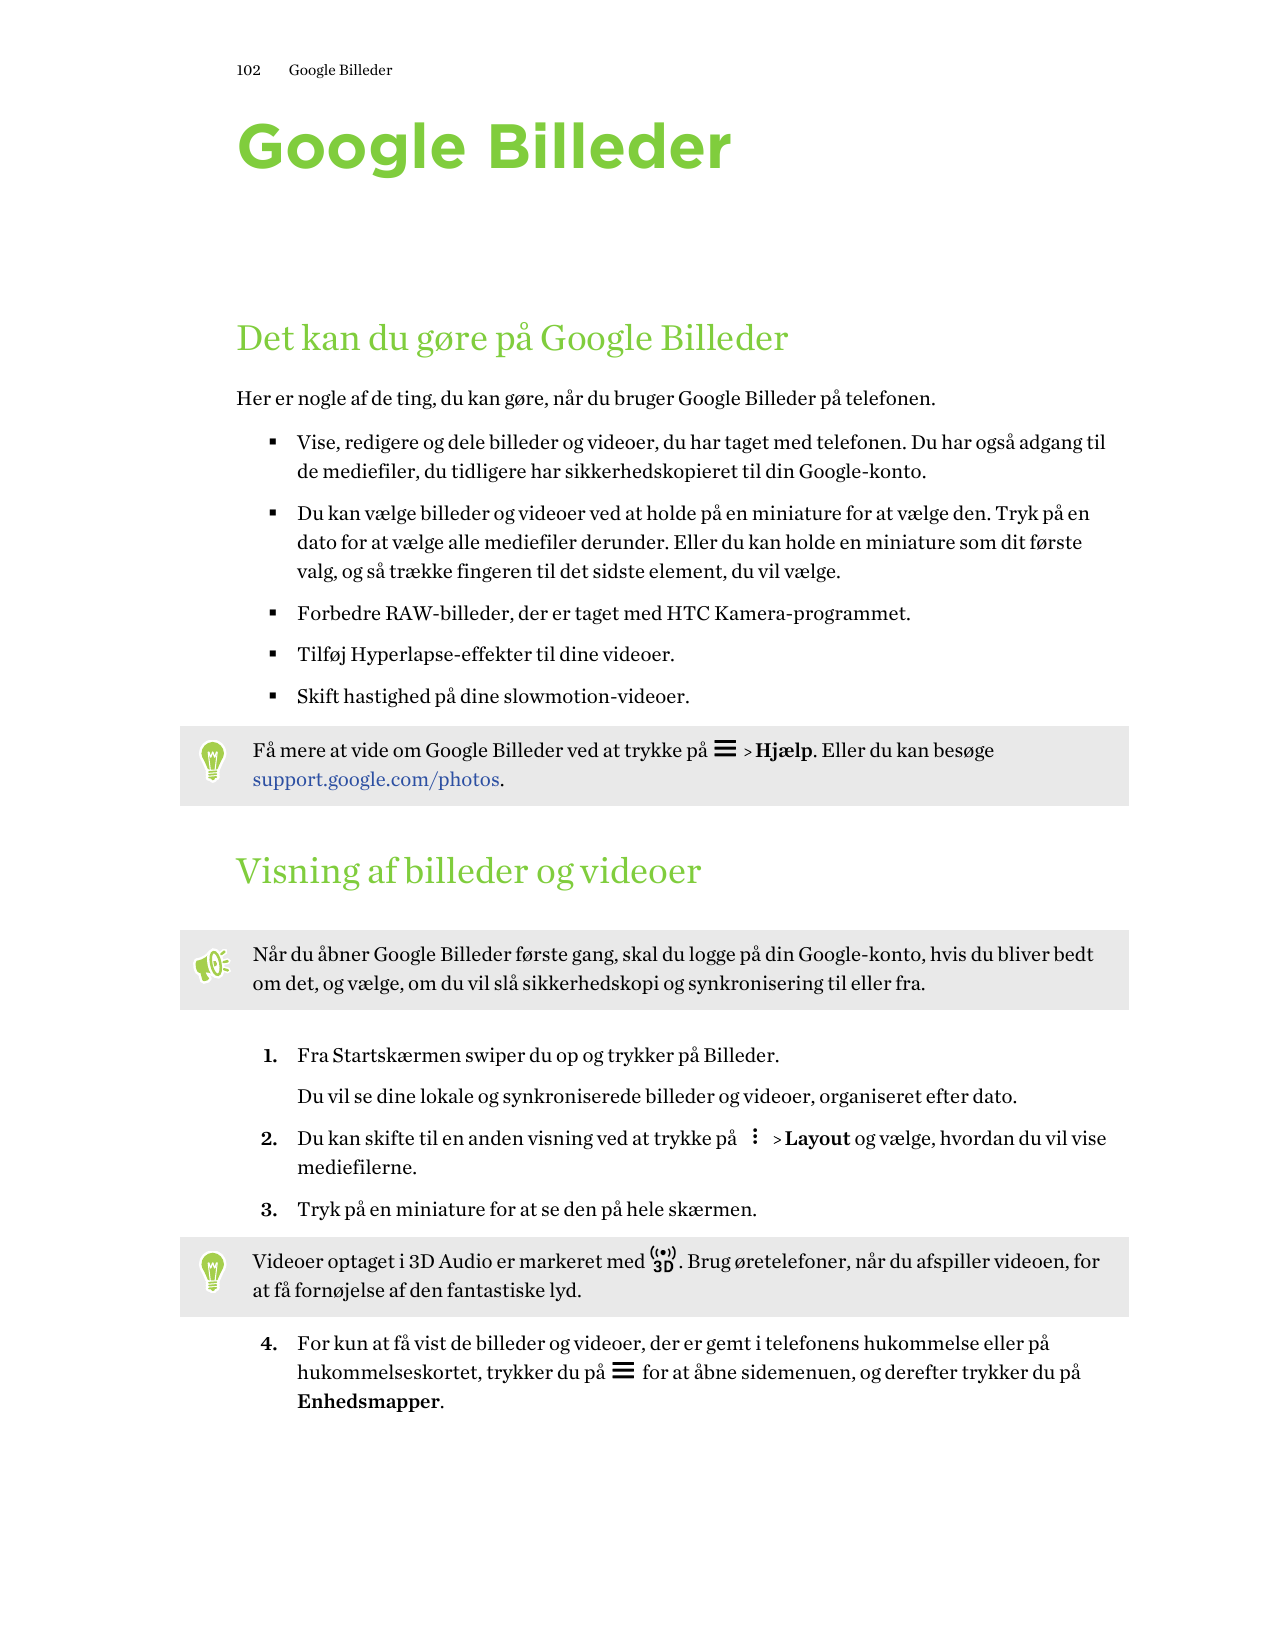 102Google BillederGoogle BillederDet kan du gøre på Google BillederHer er nogle af de ting, du kan gøre, når du bruger Google Bi